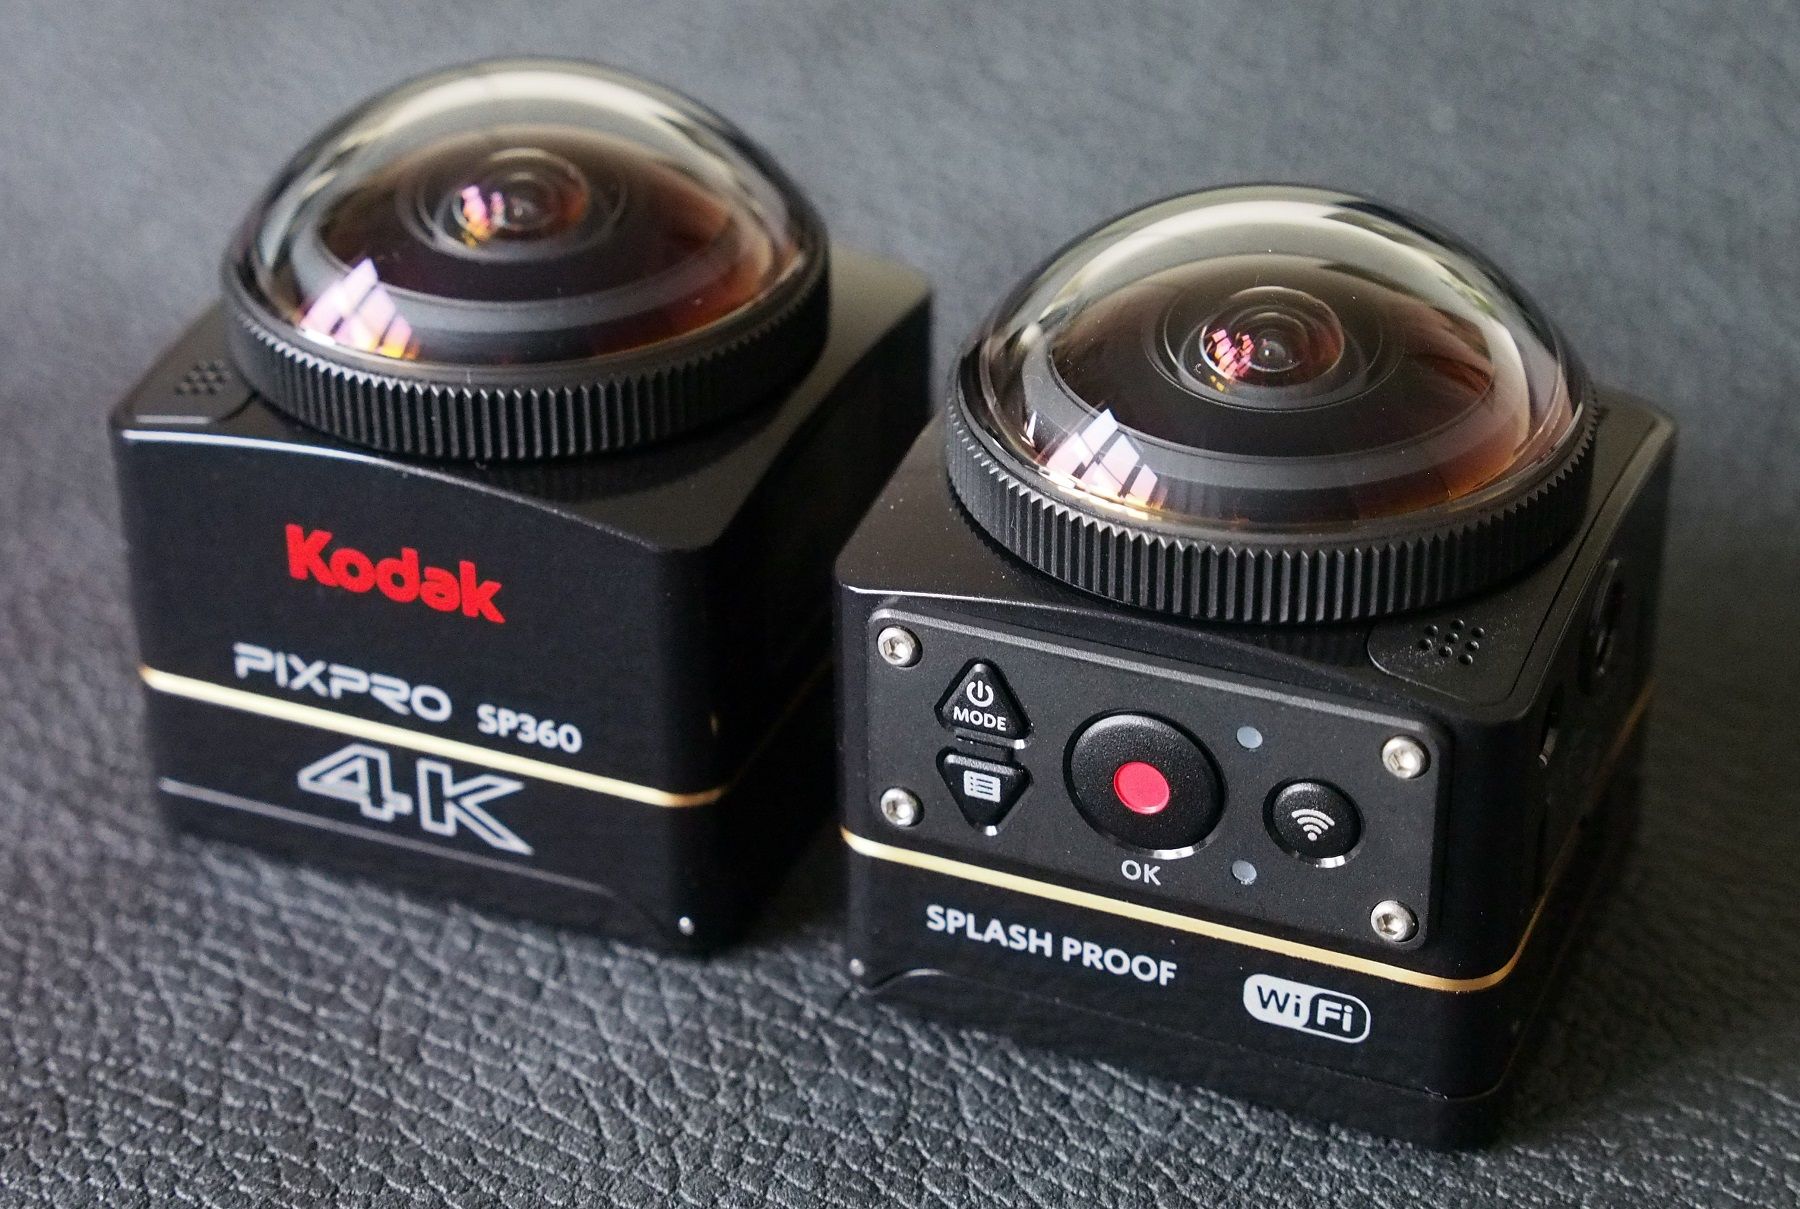 Highres Kodak Pixpro S P360 4 K 4 1463749535